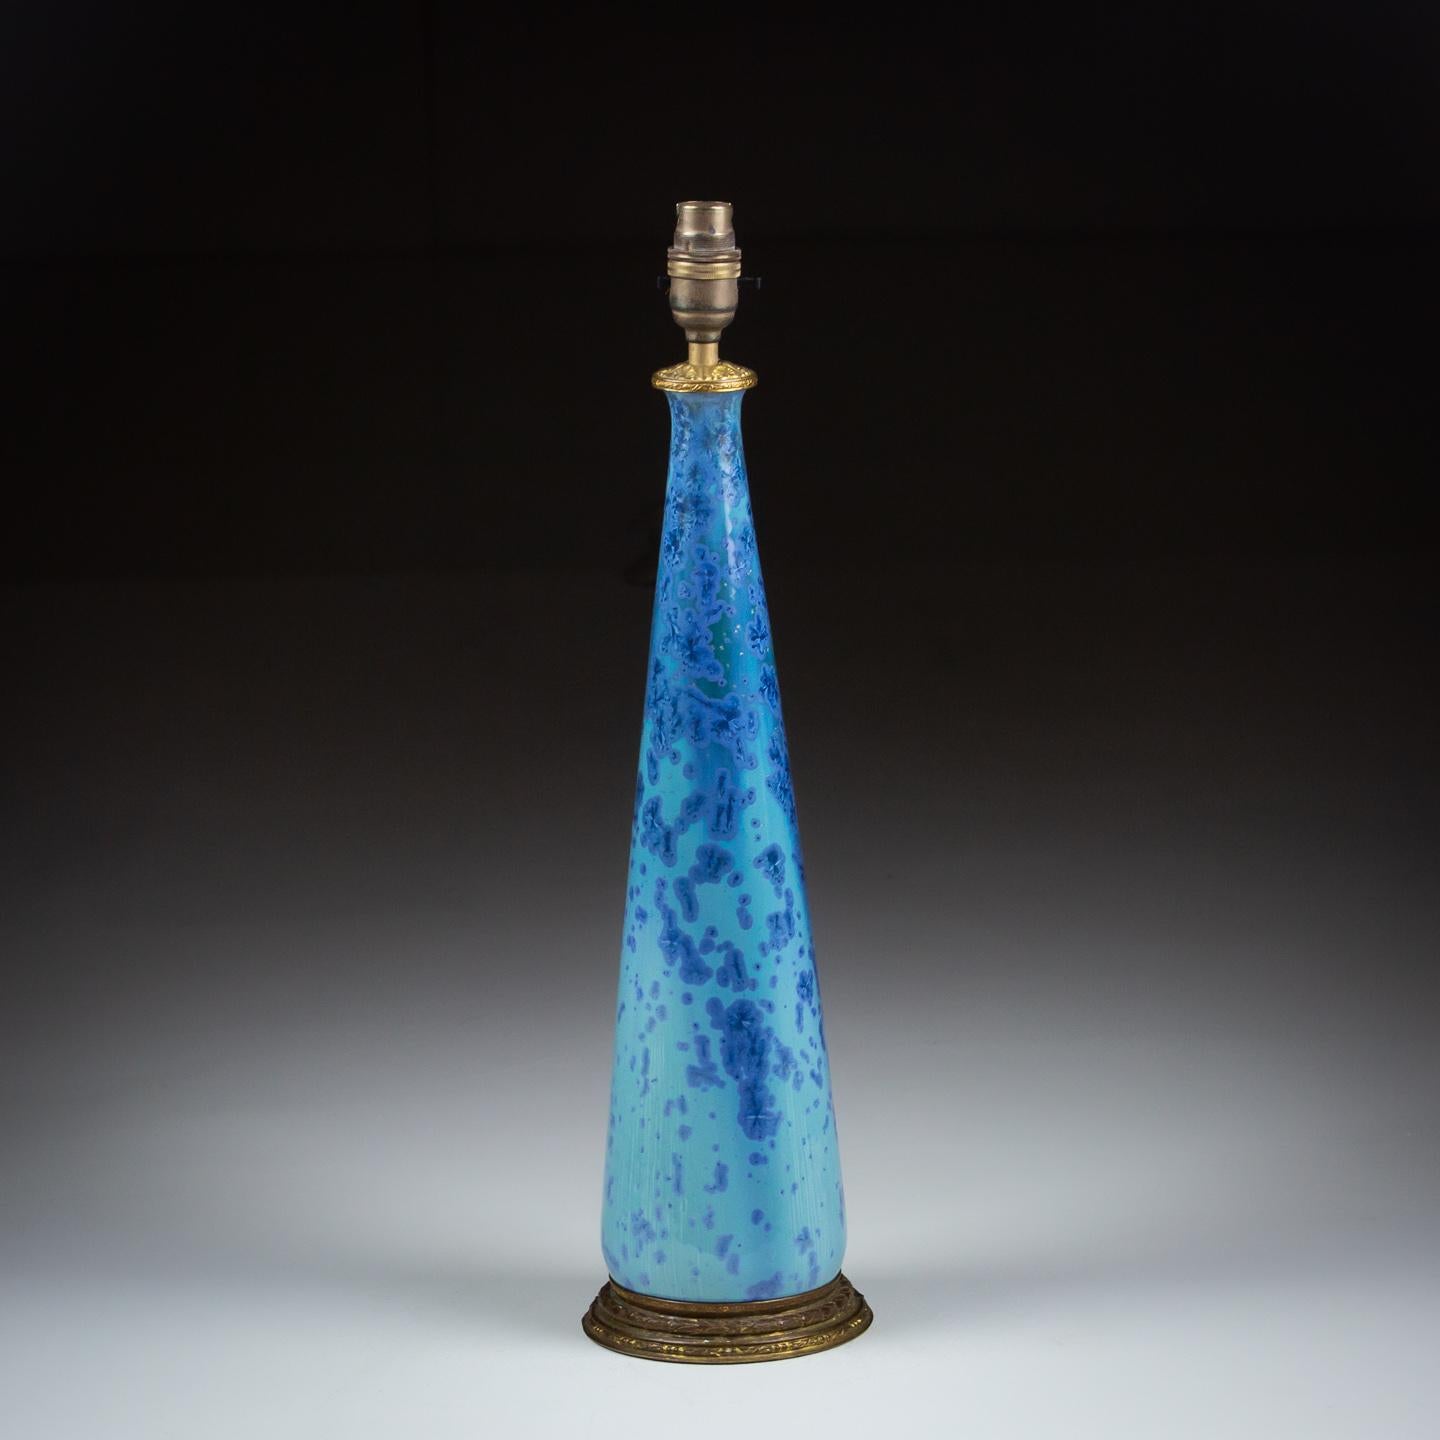 Beeindruckende Studio Pottery Vase aus dem frühen 20. Jahrhundert, leuchtendes Blau mit einer ungewöhnlichen, fast holografischen Glasur, die im Laufe des Tages den Ton und die Schattierung des Blaus verändert.

Frankreich CIRCA 1930

Neu verdrahtet